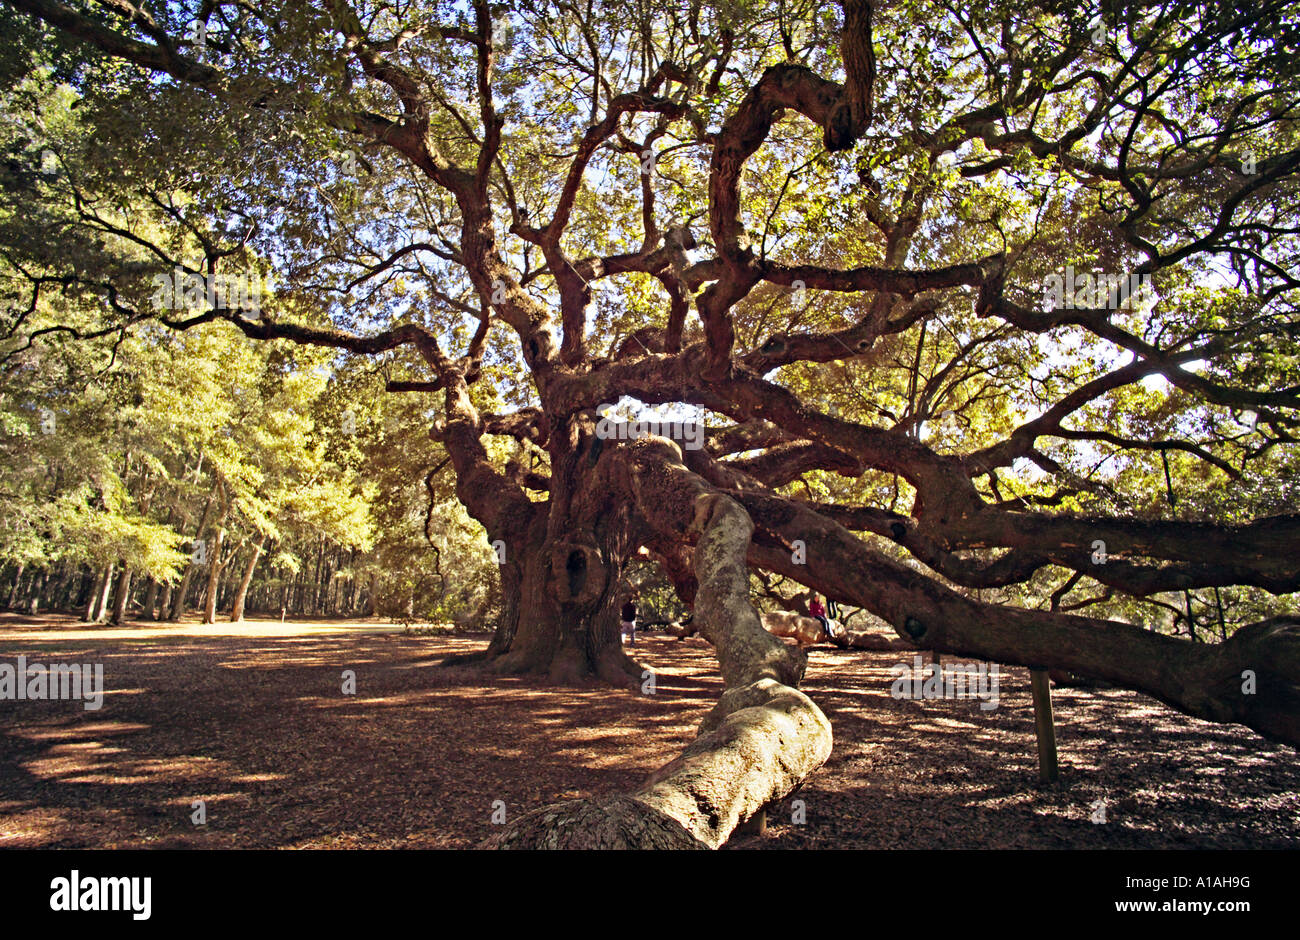 CAROLINA DEL SUD CHARLESTON ANGEL OAK la più antica cosa vivente ad ovest delle montagne rocciose questo magnifico live oak Foto Stock